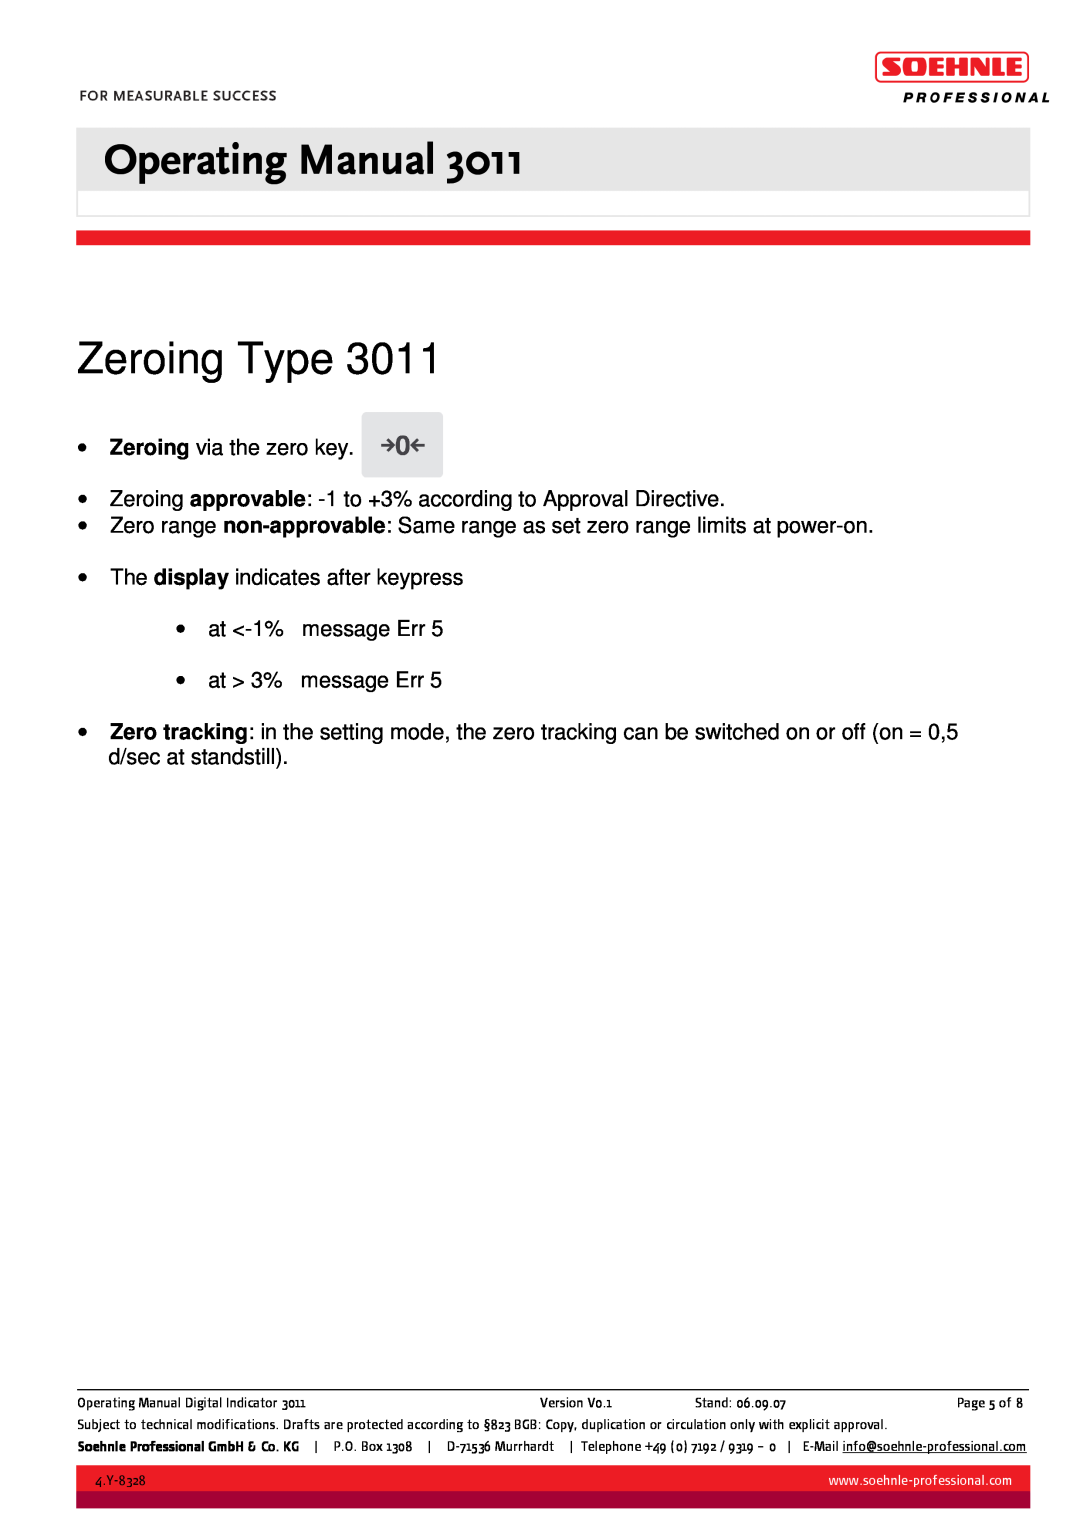 Soehnle 3011 manual Zeroing Type, Operating Manual 